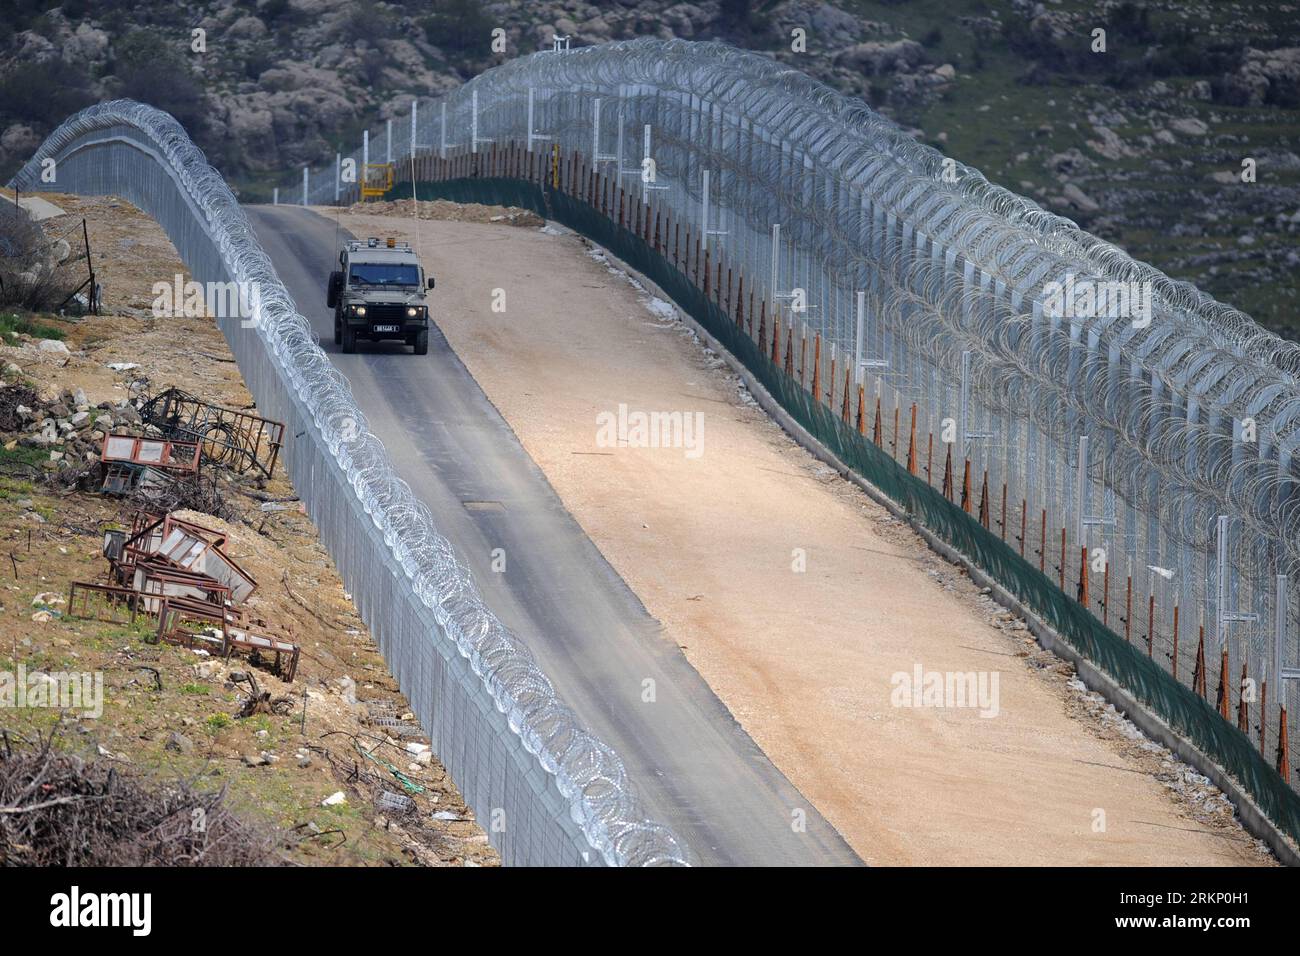 Bildnummer: 57770215 Datum: 30.03.2012 Copyright: Imago/Xinhua (120330) -- MAJDAL SHAMS, 30 de marzo de 2012 (Xinhua) -- Un vehículo militar israelí patrulla a lo largo de la línea de alto el fuego sirio-israelí cerca de la aldea drusa de Majdal Shams en los Altos del Golán el 30 de marzo de 2012. Israel desplegó miles de fuerzas de seguridad adicionales el viernes, reforzar los cruces fronterizos con Líbano y Siria y cerrar los cruces con la Cisjordania ocupada para un evento de solidaridad llamado Marcha Global a Jerusalén en el Día de la Tierra para conmemorar el evento cuando seis árabes murieron en 1976 mientras protestaban contra el sei de Israel Foto de stock